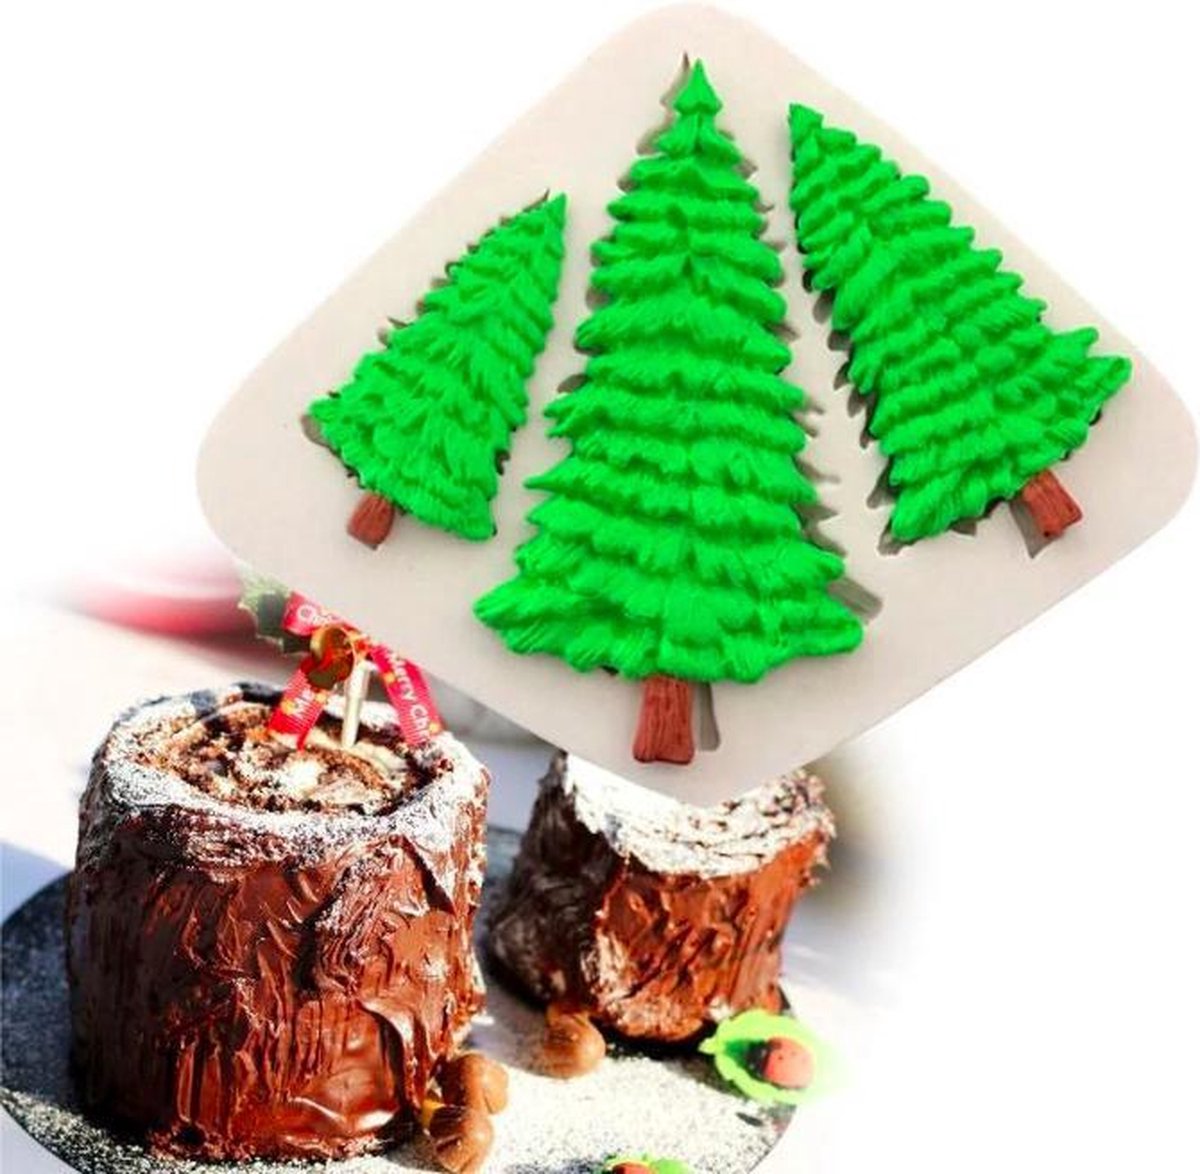 ProductGoods - Fondant Kerstbomen Mal - Siliconen Kerst Versiering Vorm - Kerstboom Fondant / Marsepein / Chocolade / Zeep - Voor Kerstmis Decoratie Van Taart, Cupcakes en Cake / Siliconen Bakvorm